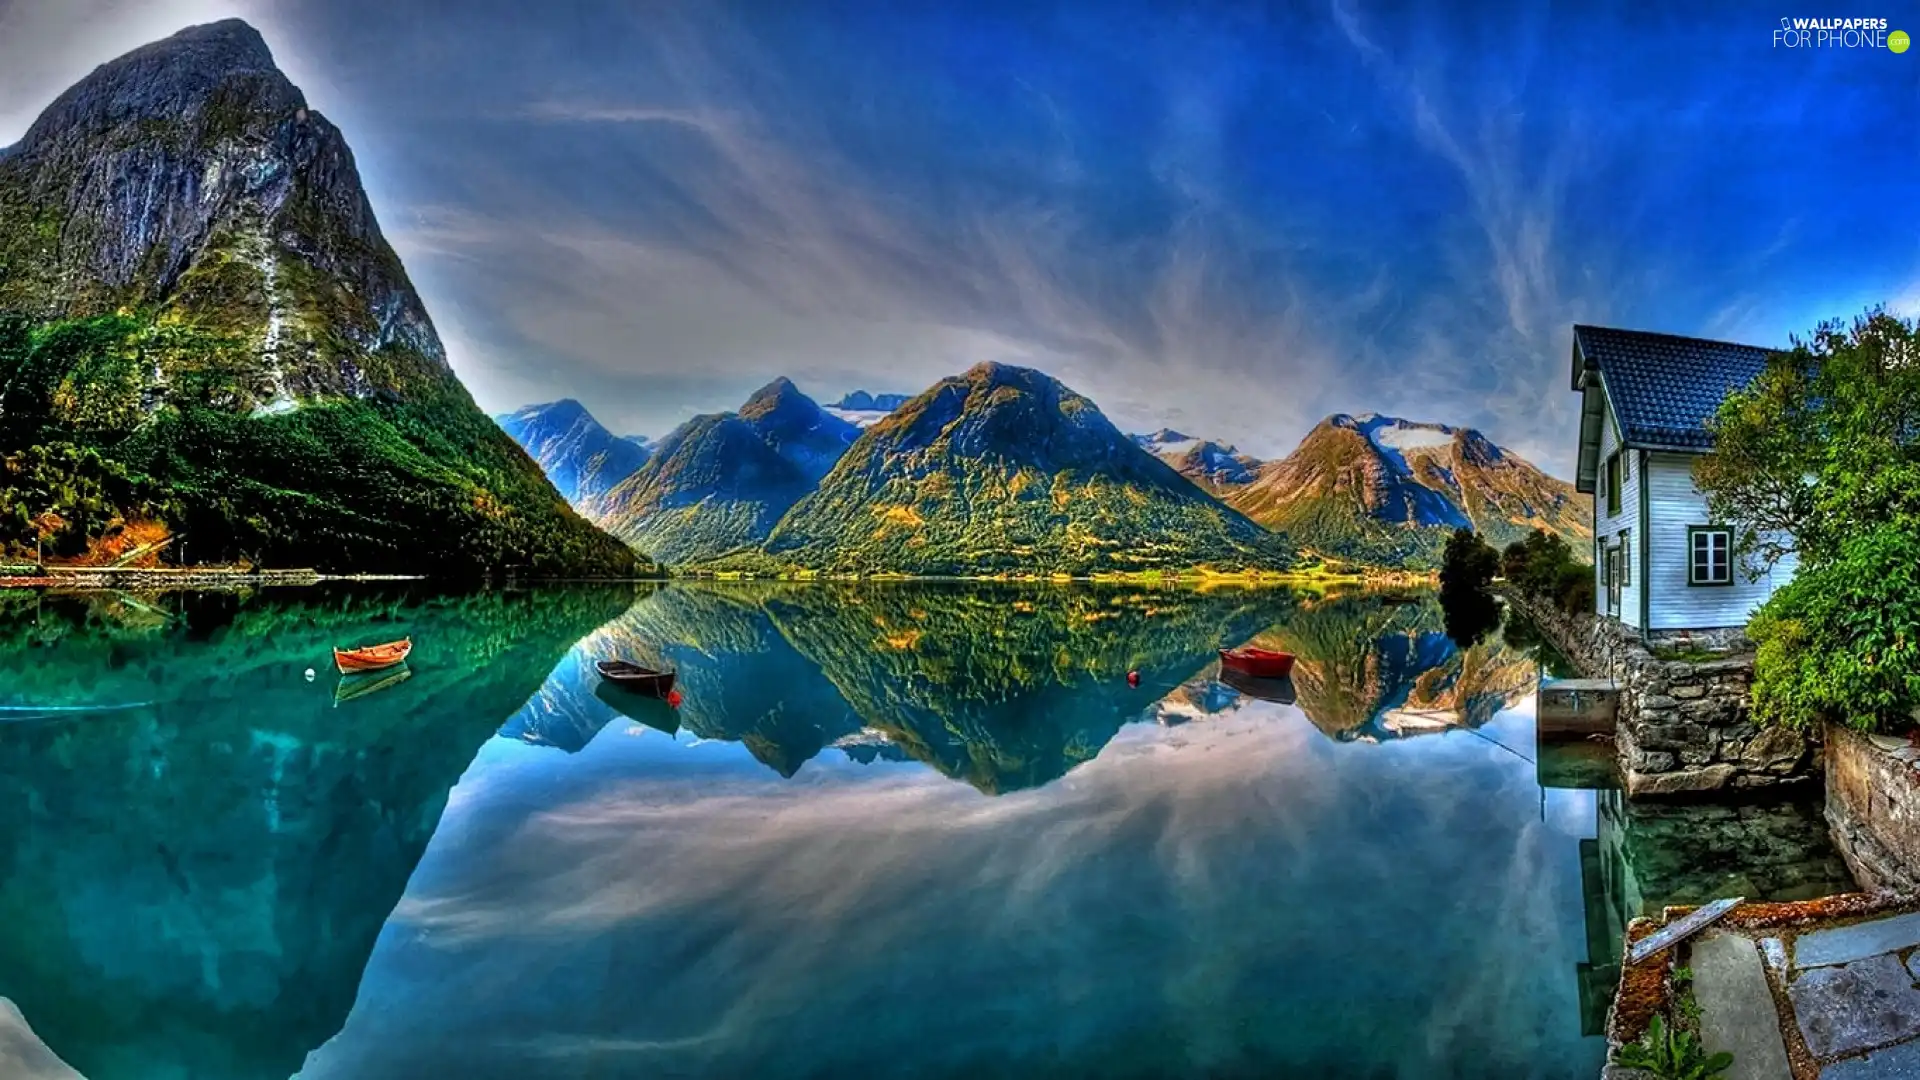 Mountains, reflection, Mirror, lake